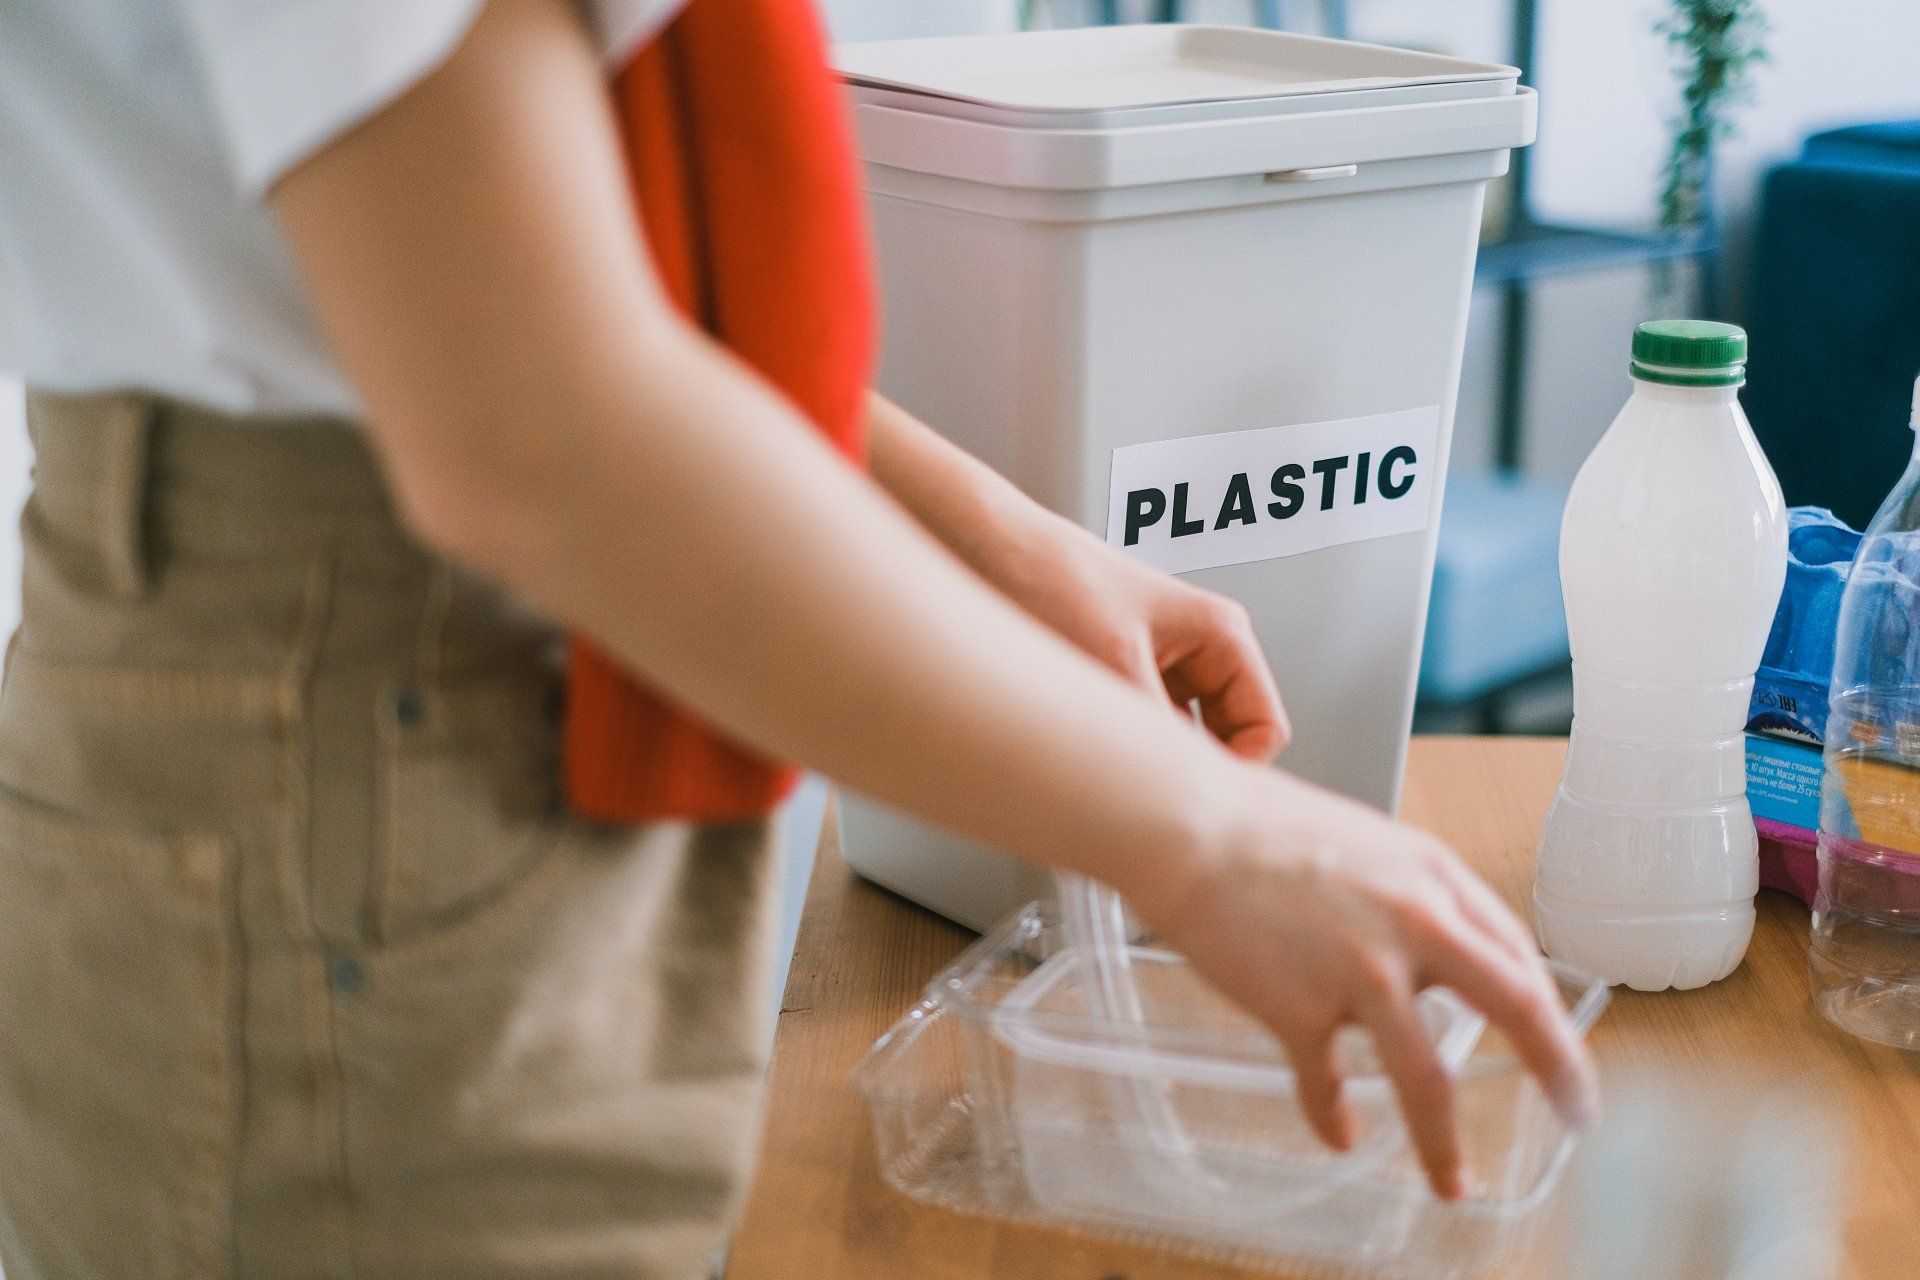 une personne jette des objets en plastique dans un bac de recyclage